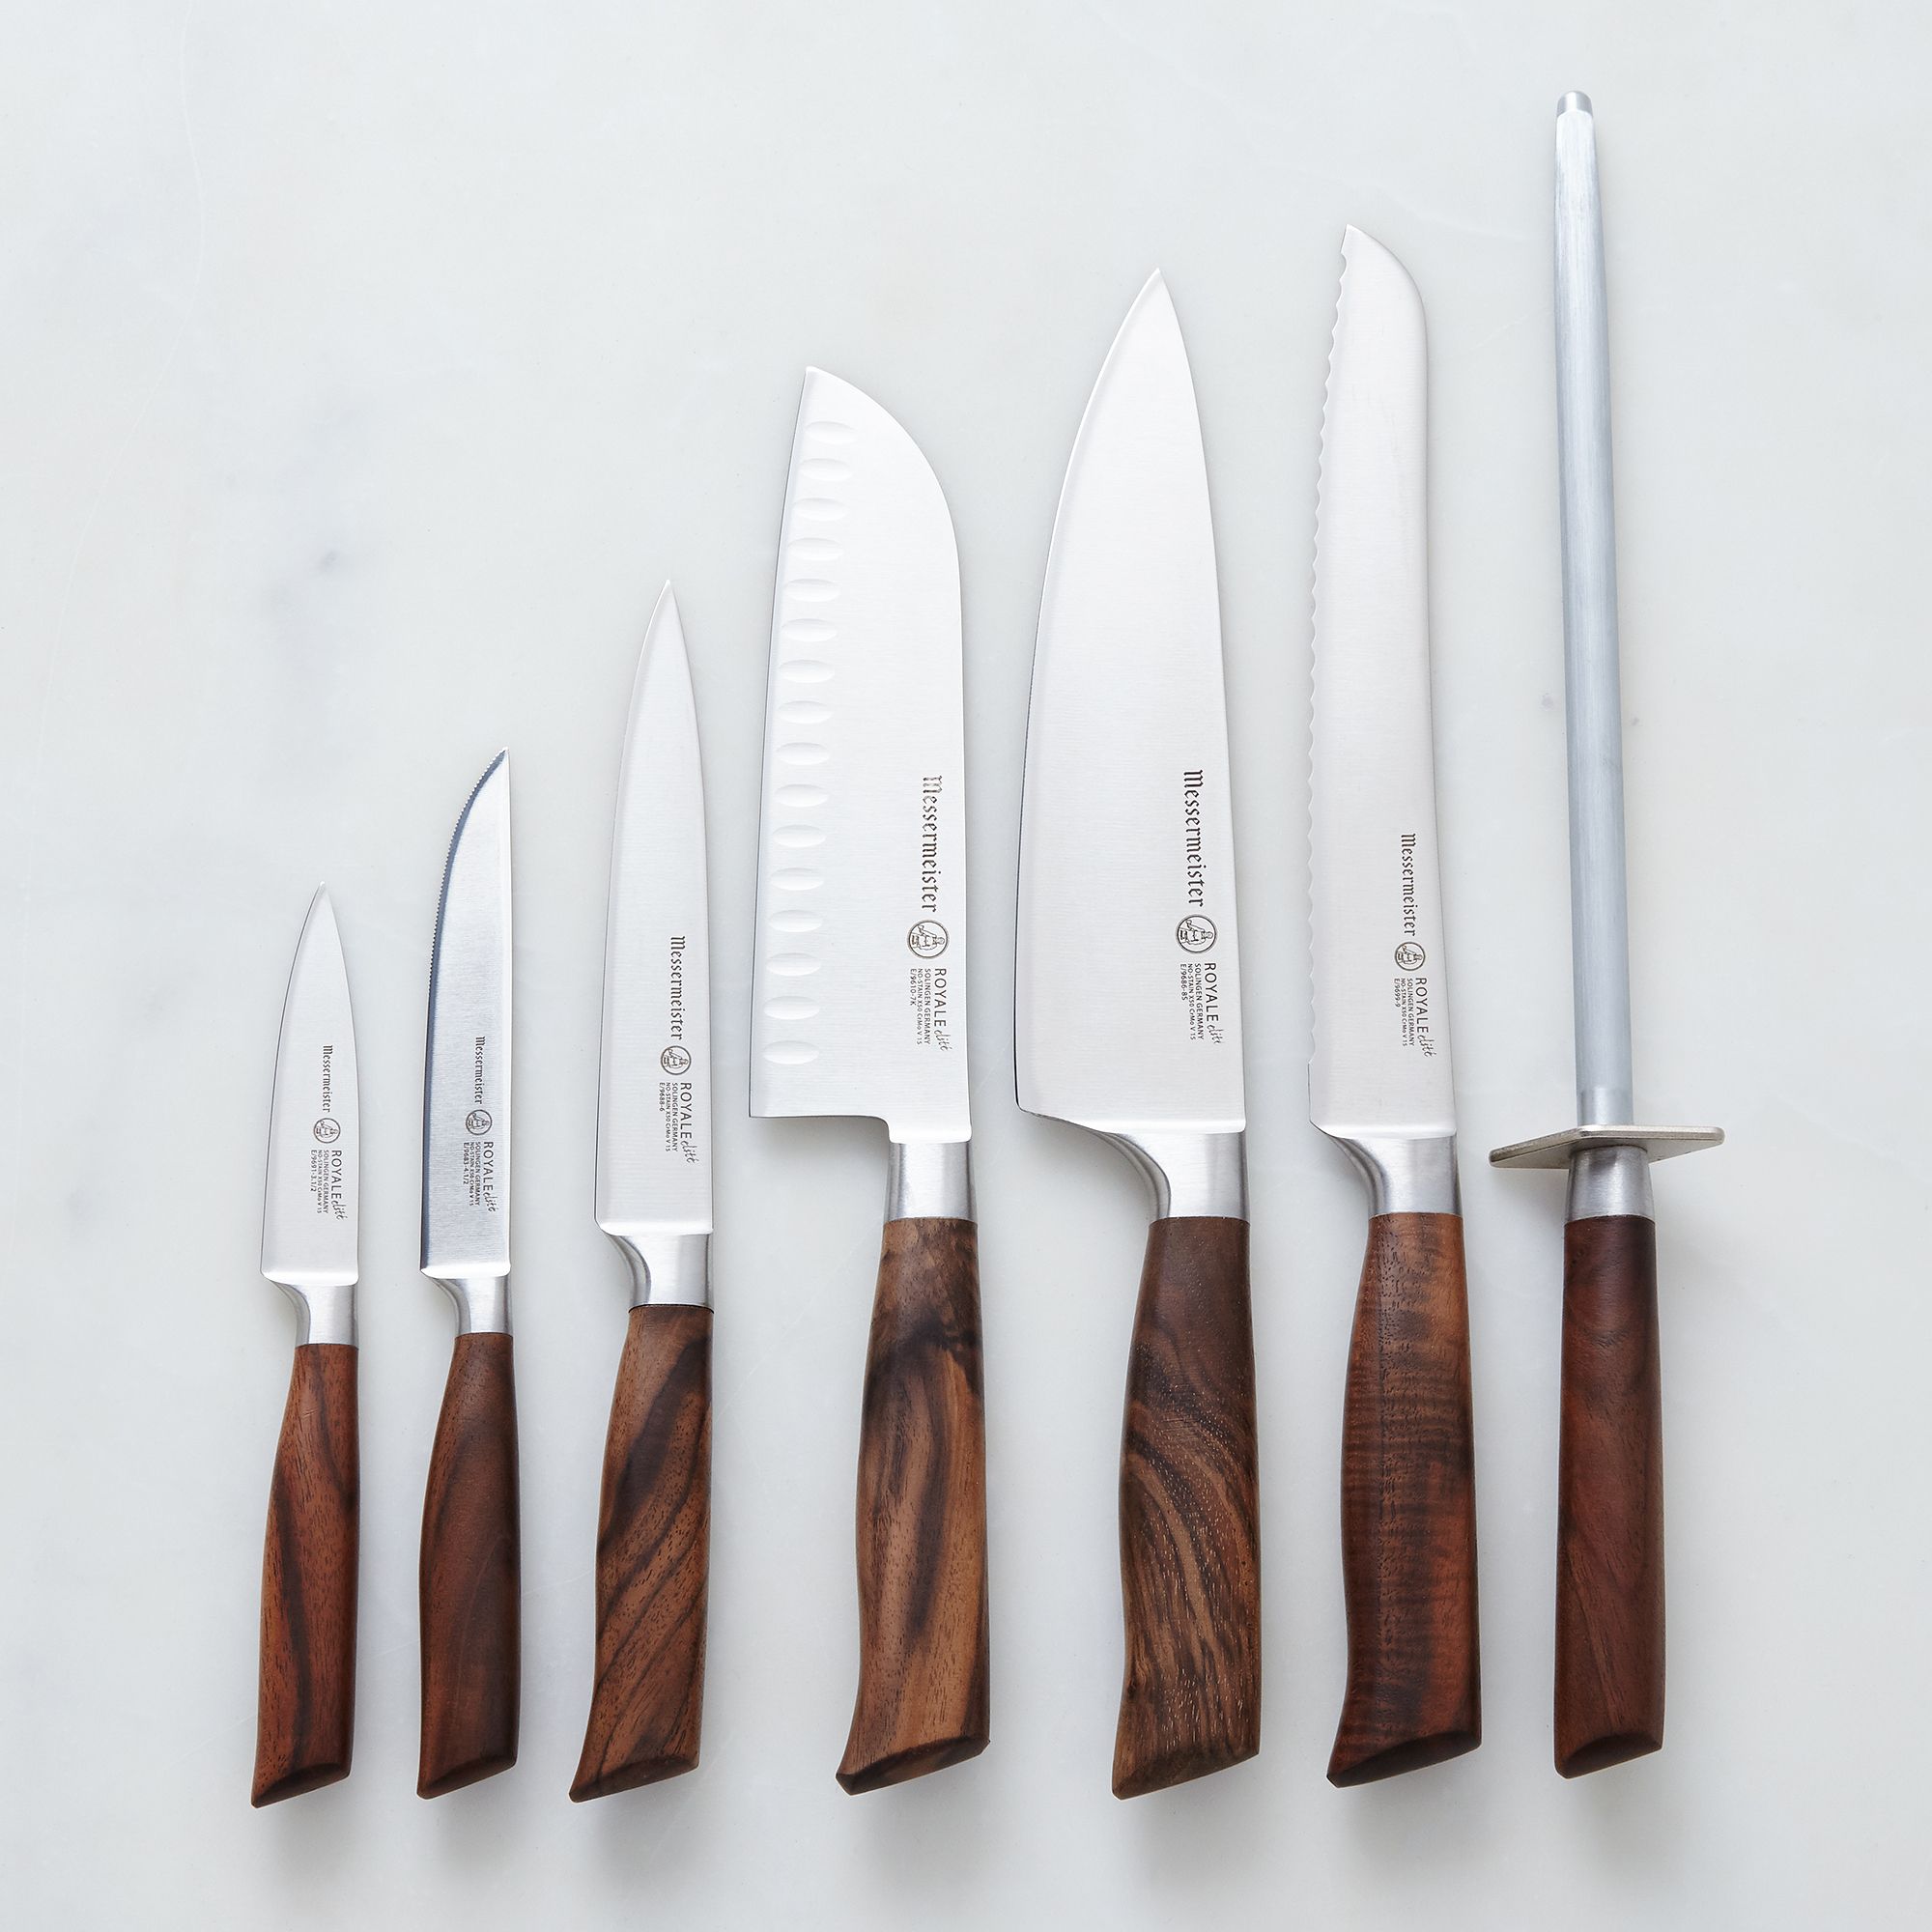 Royale Elité Walnut Handled Knives on Food52